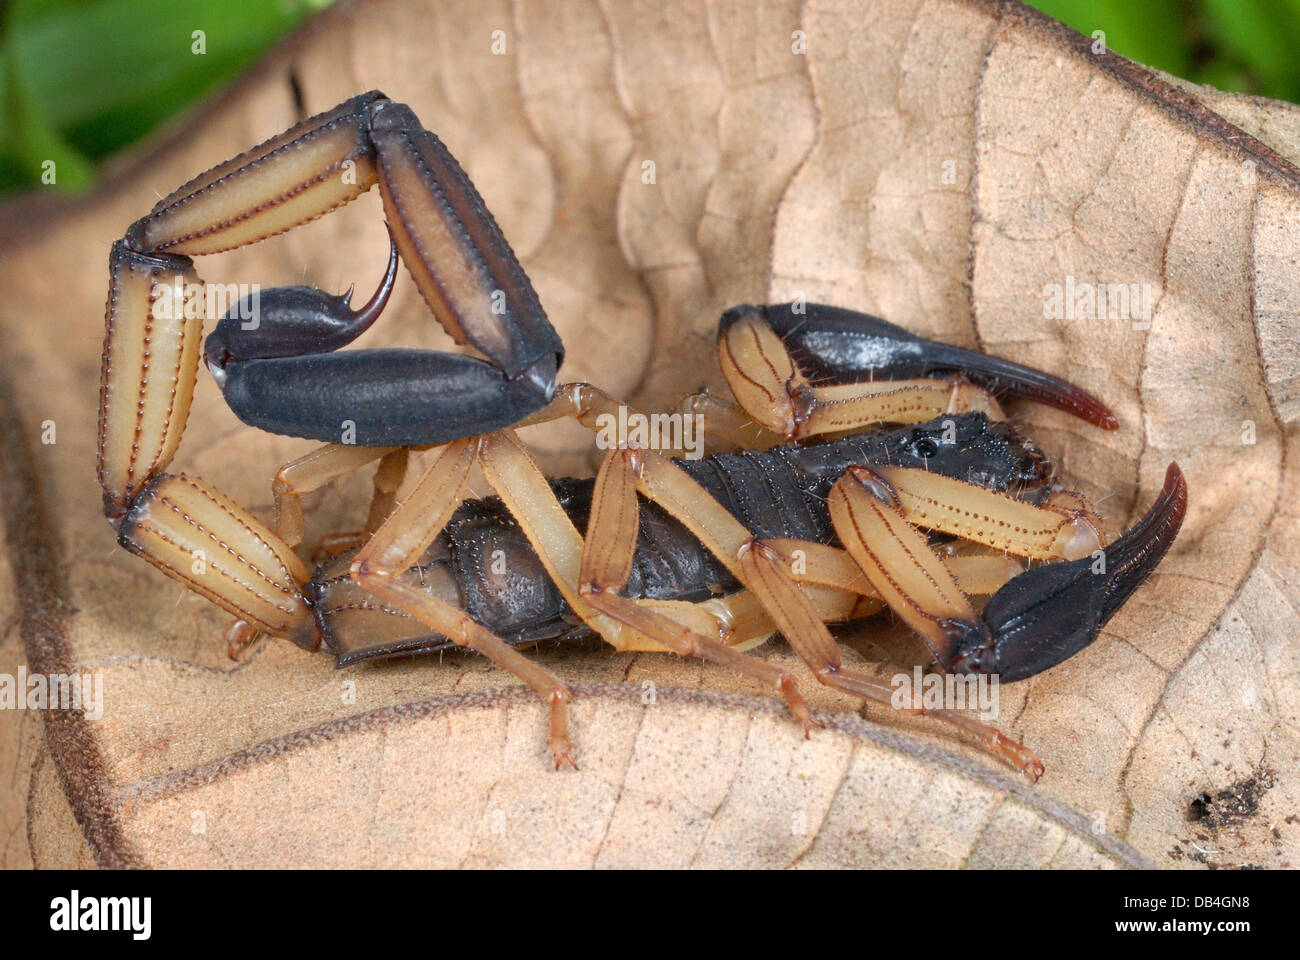 Bark Scorpion (Centruroides bicolour) in Costa Rica rainforest Stock Photo